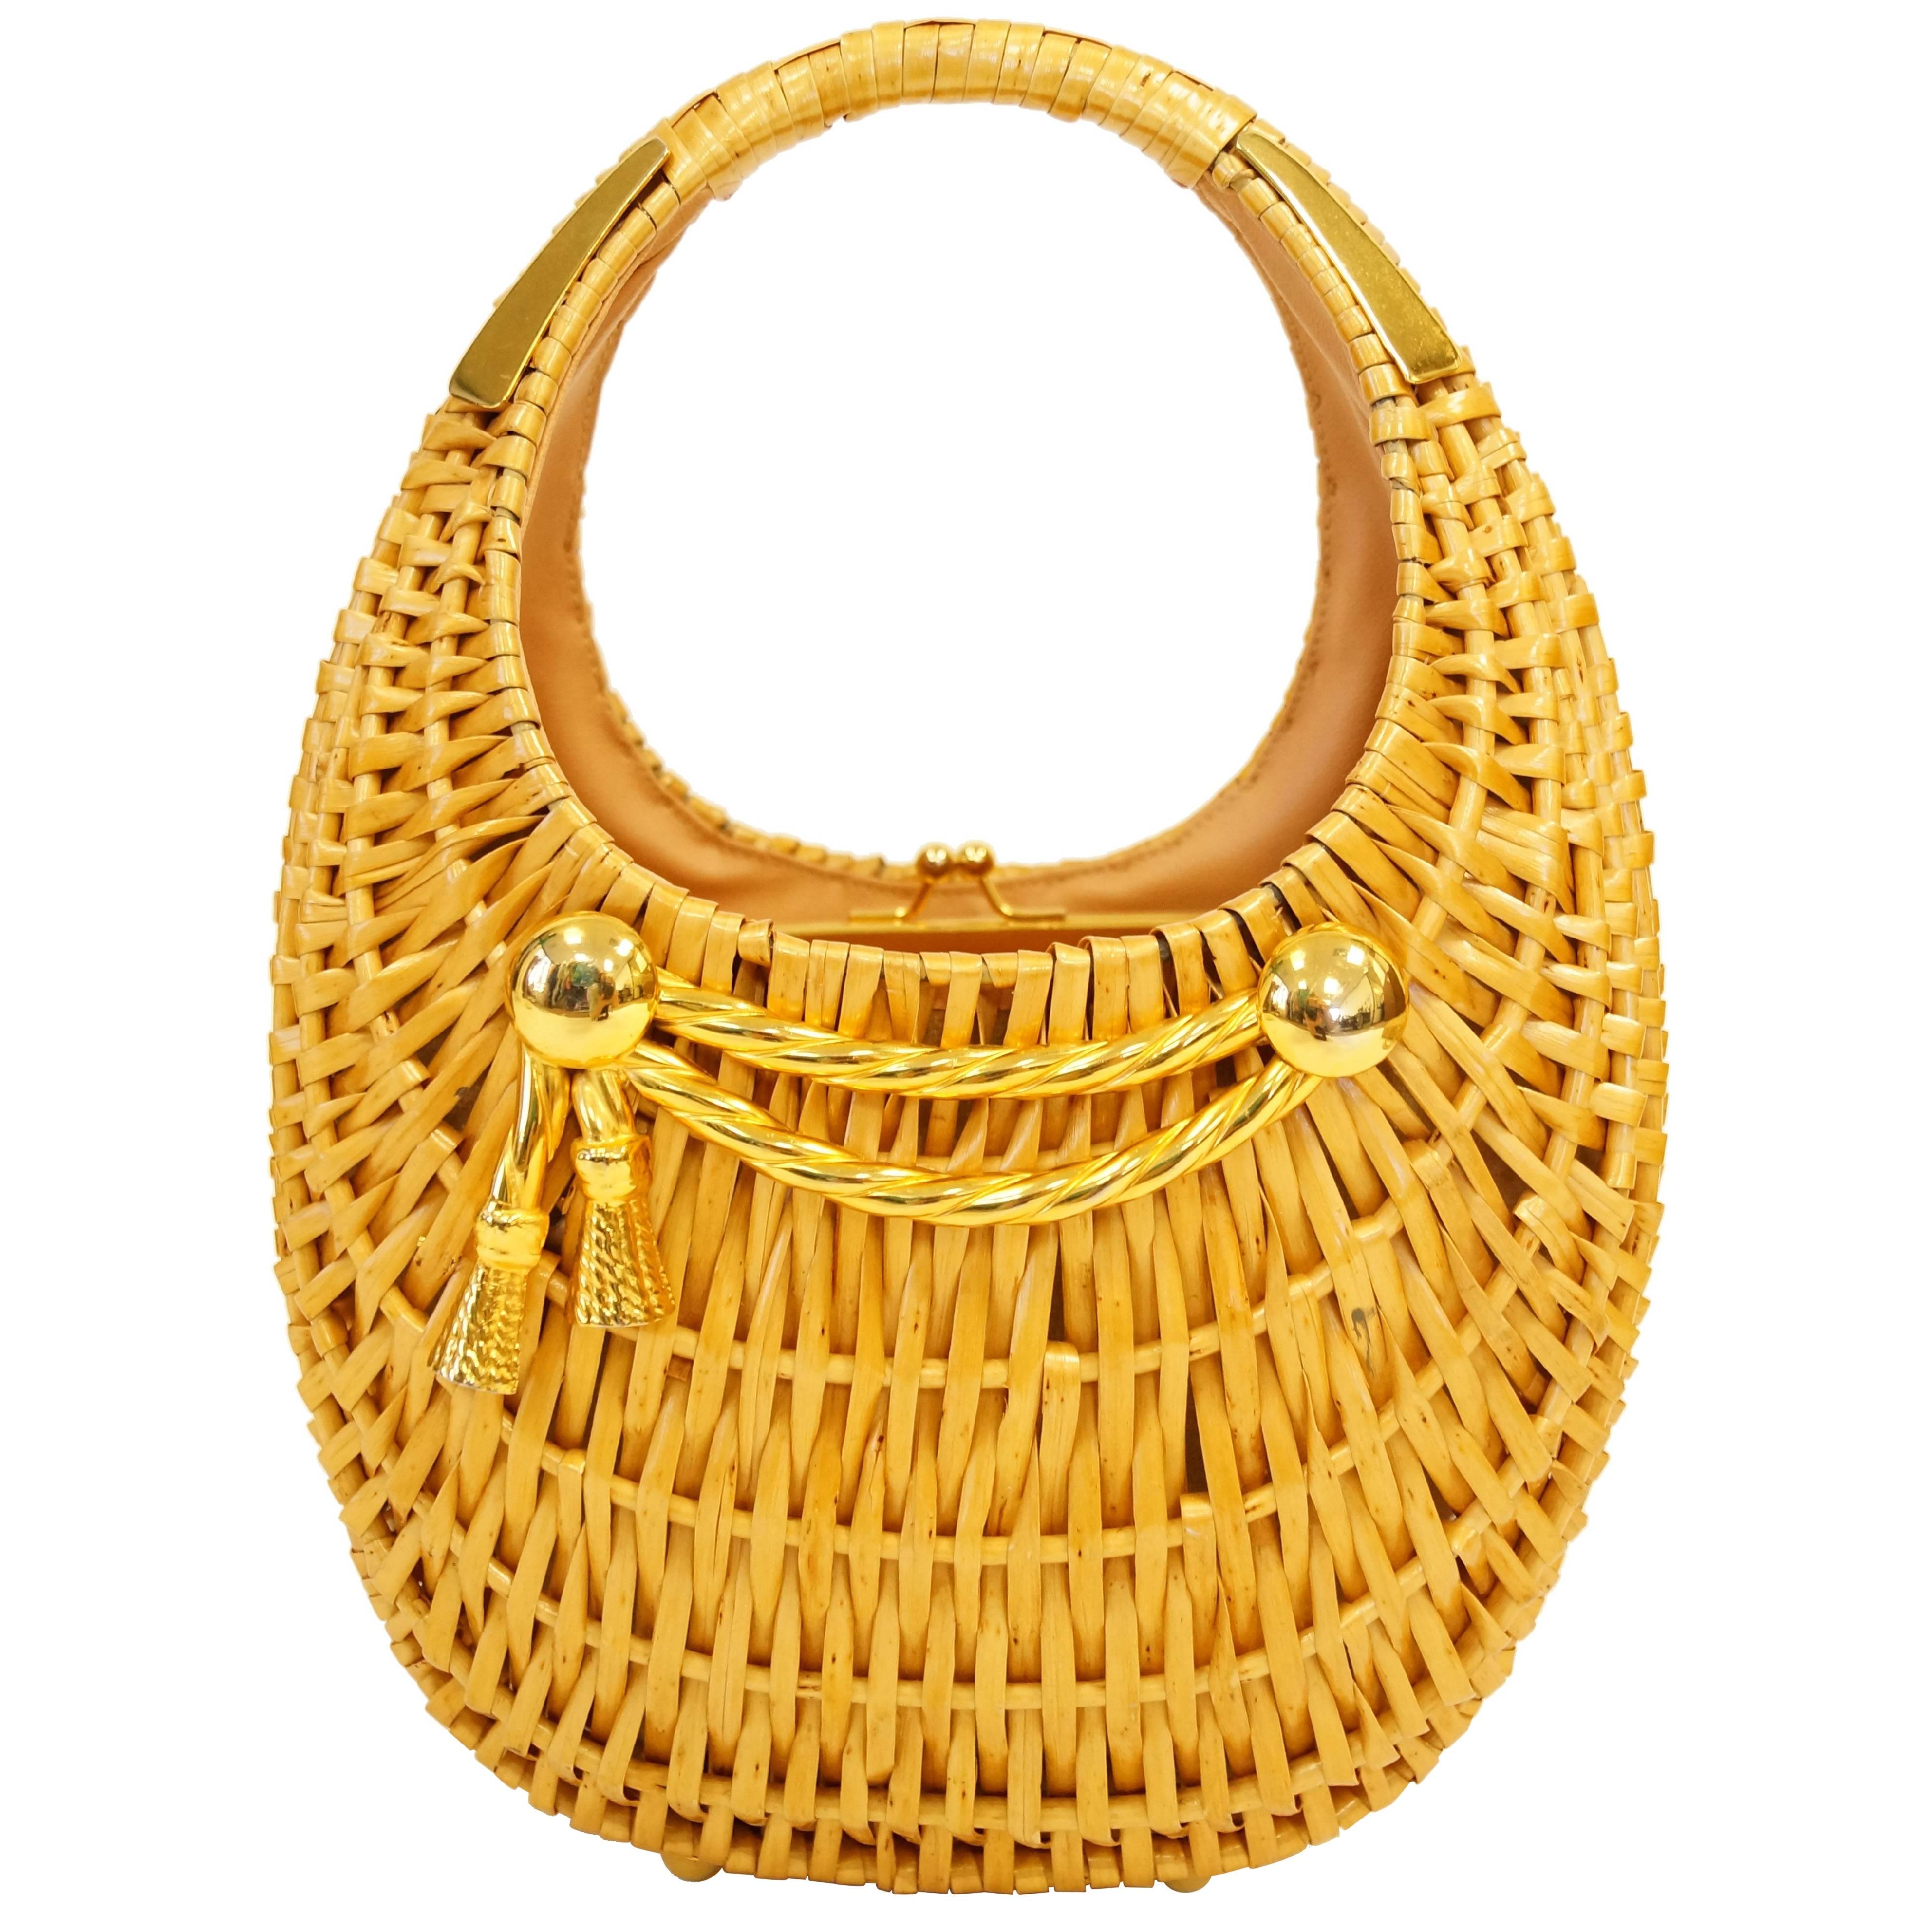  1950s Koret Crescent Flat Reed Basket Handbag with Gold Tassel